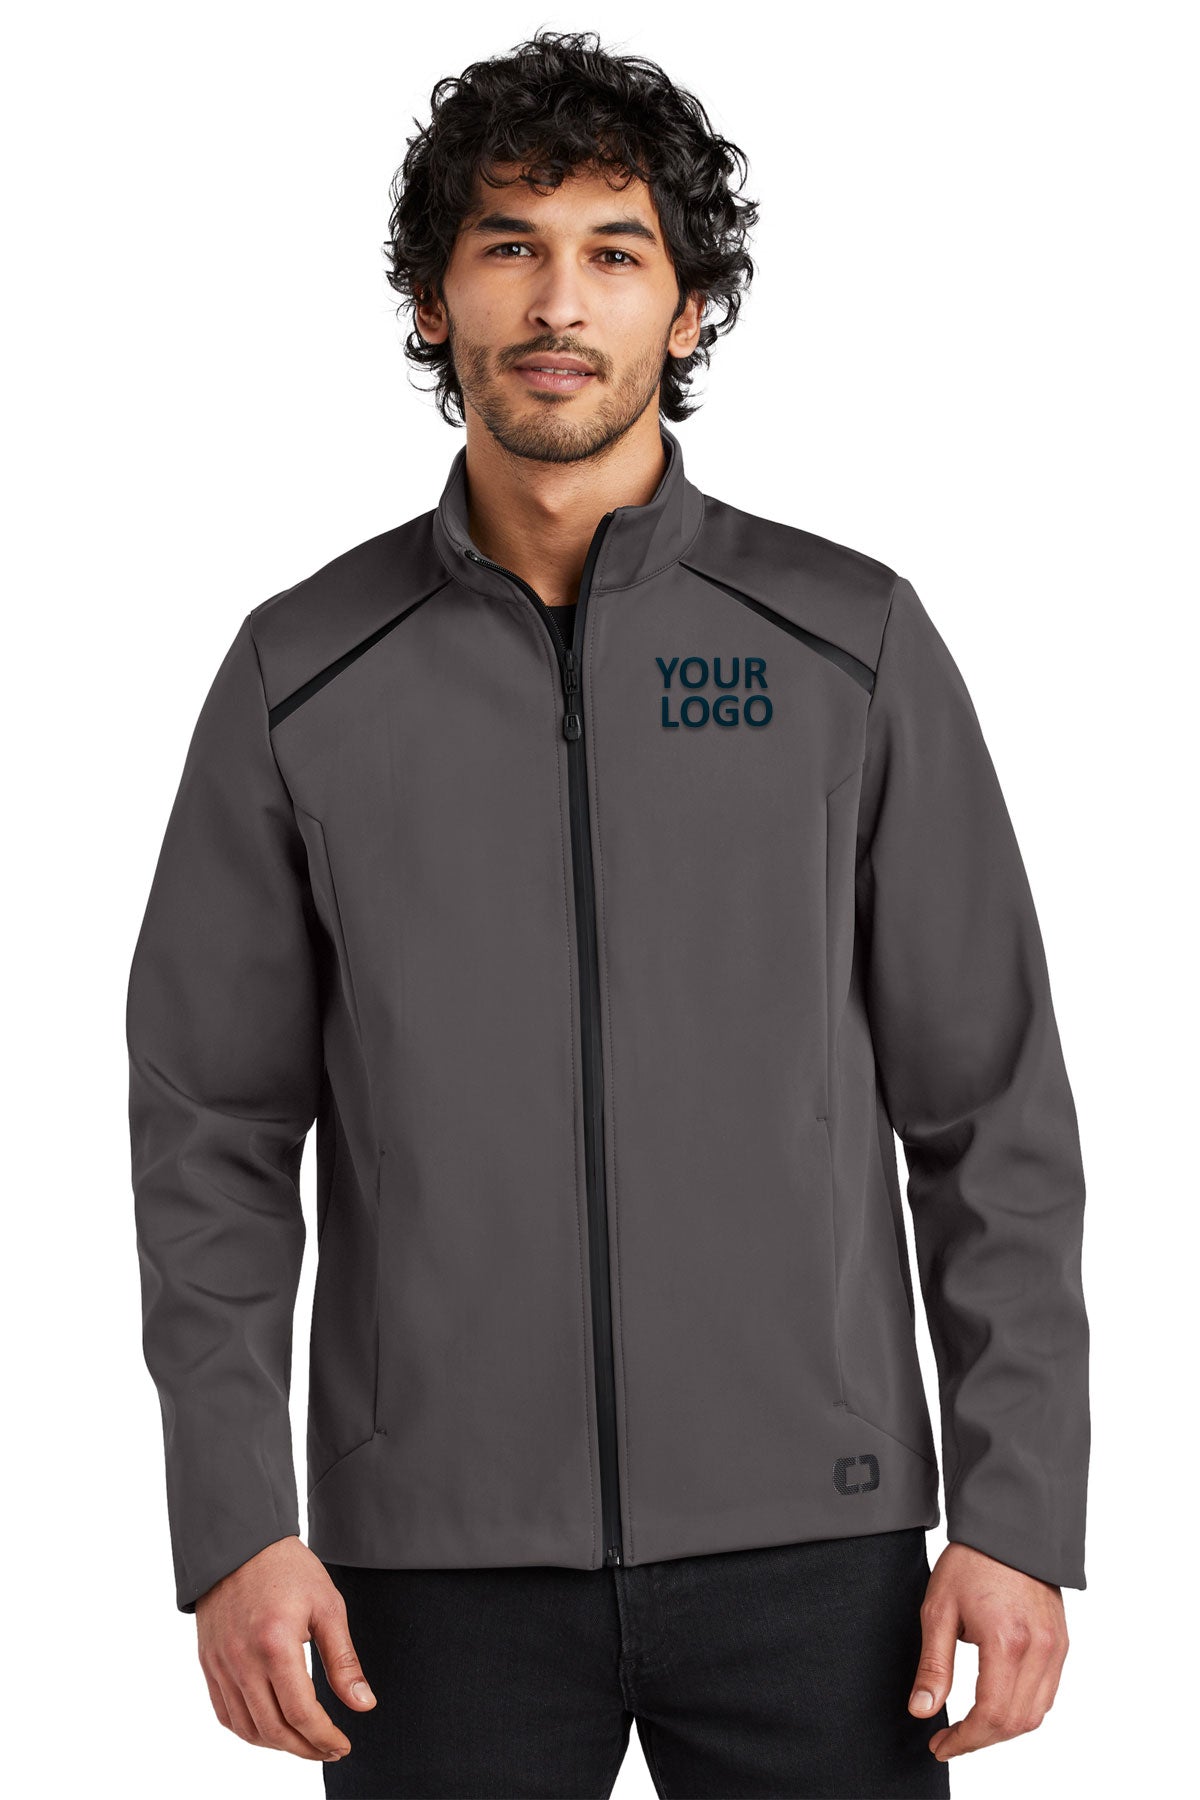 OGIO Tarmac Grey OG725 jackets with company logo